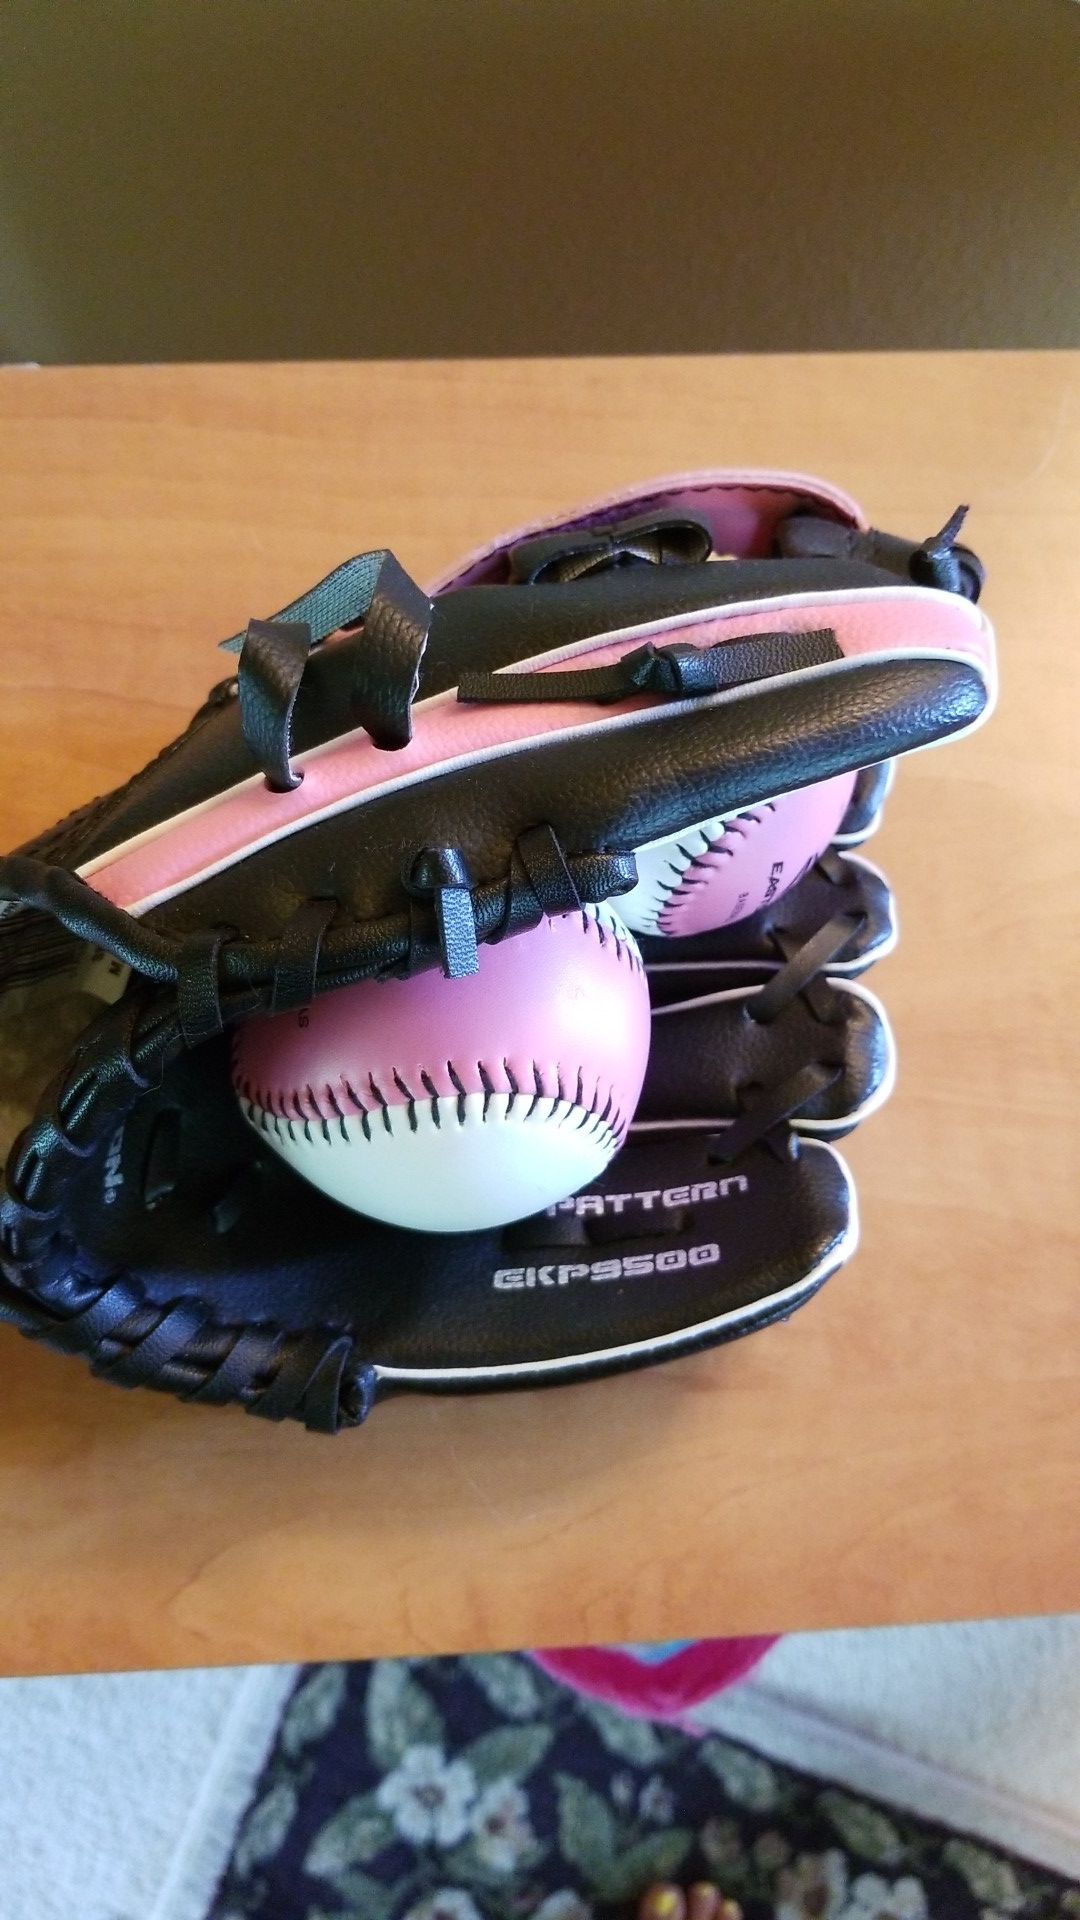 Girls baseball or softball glove for beginners